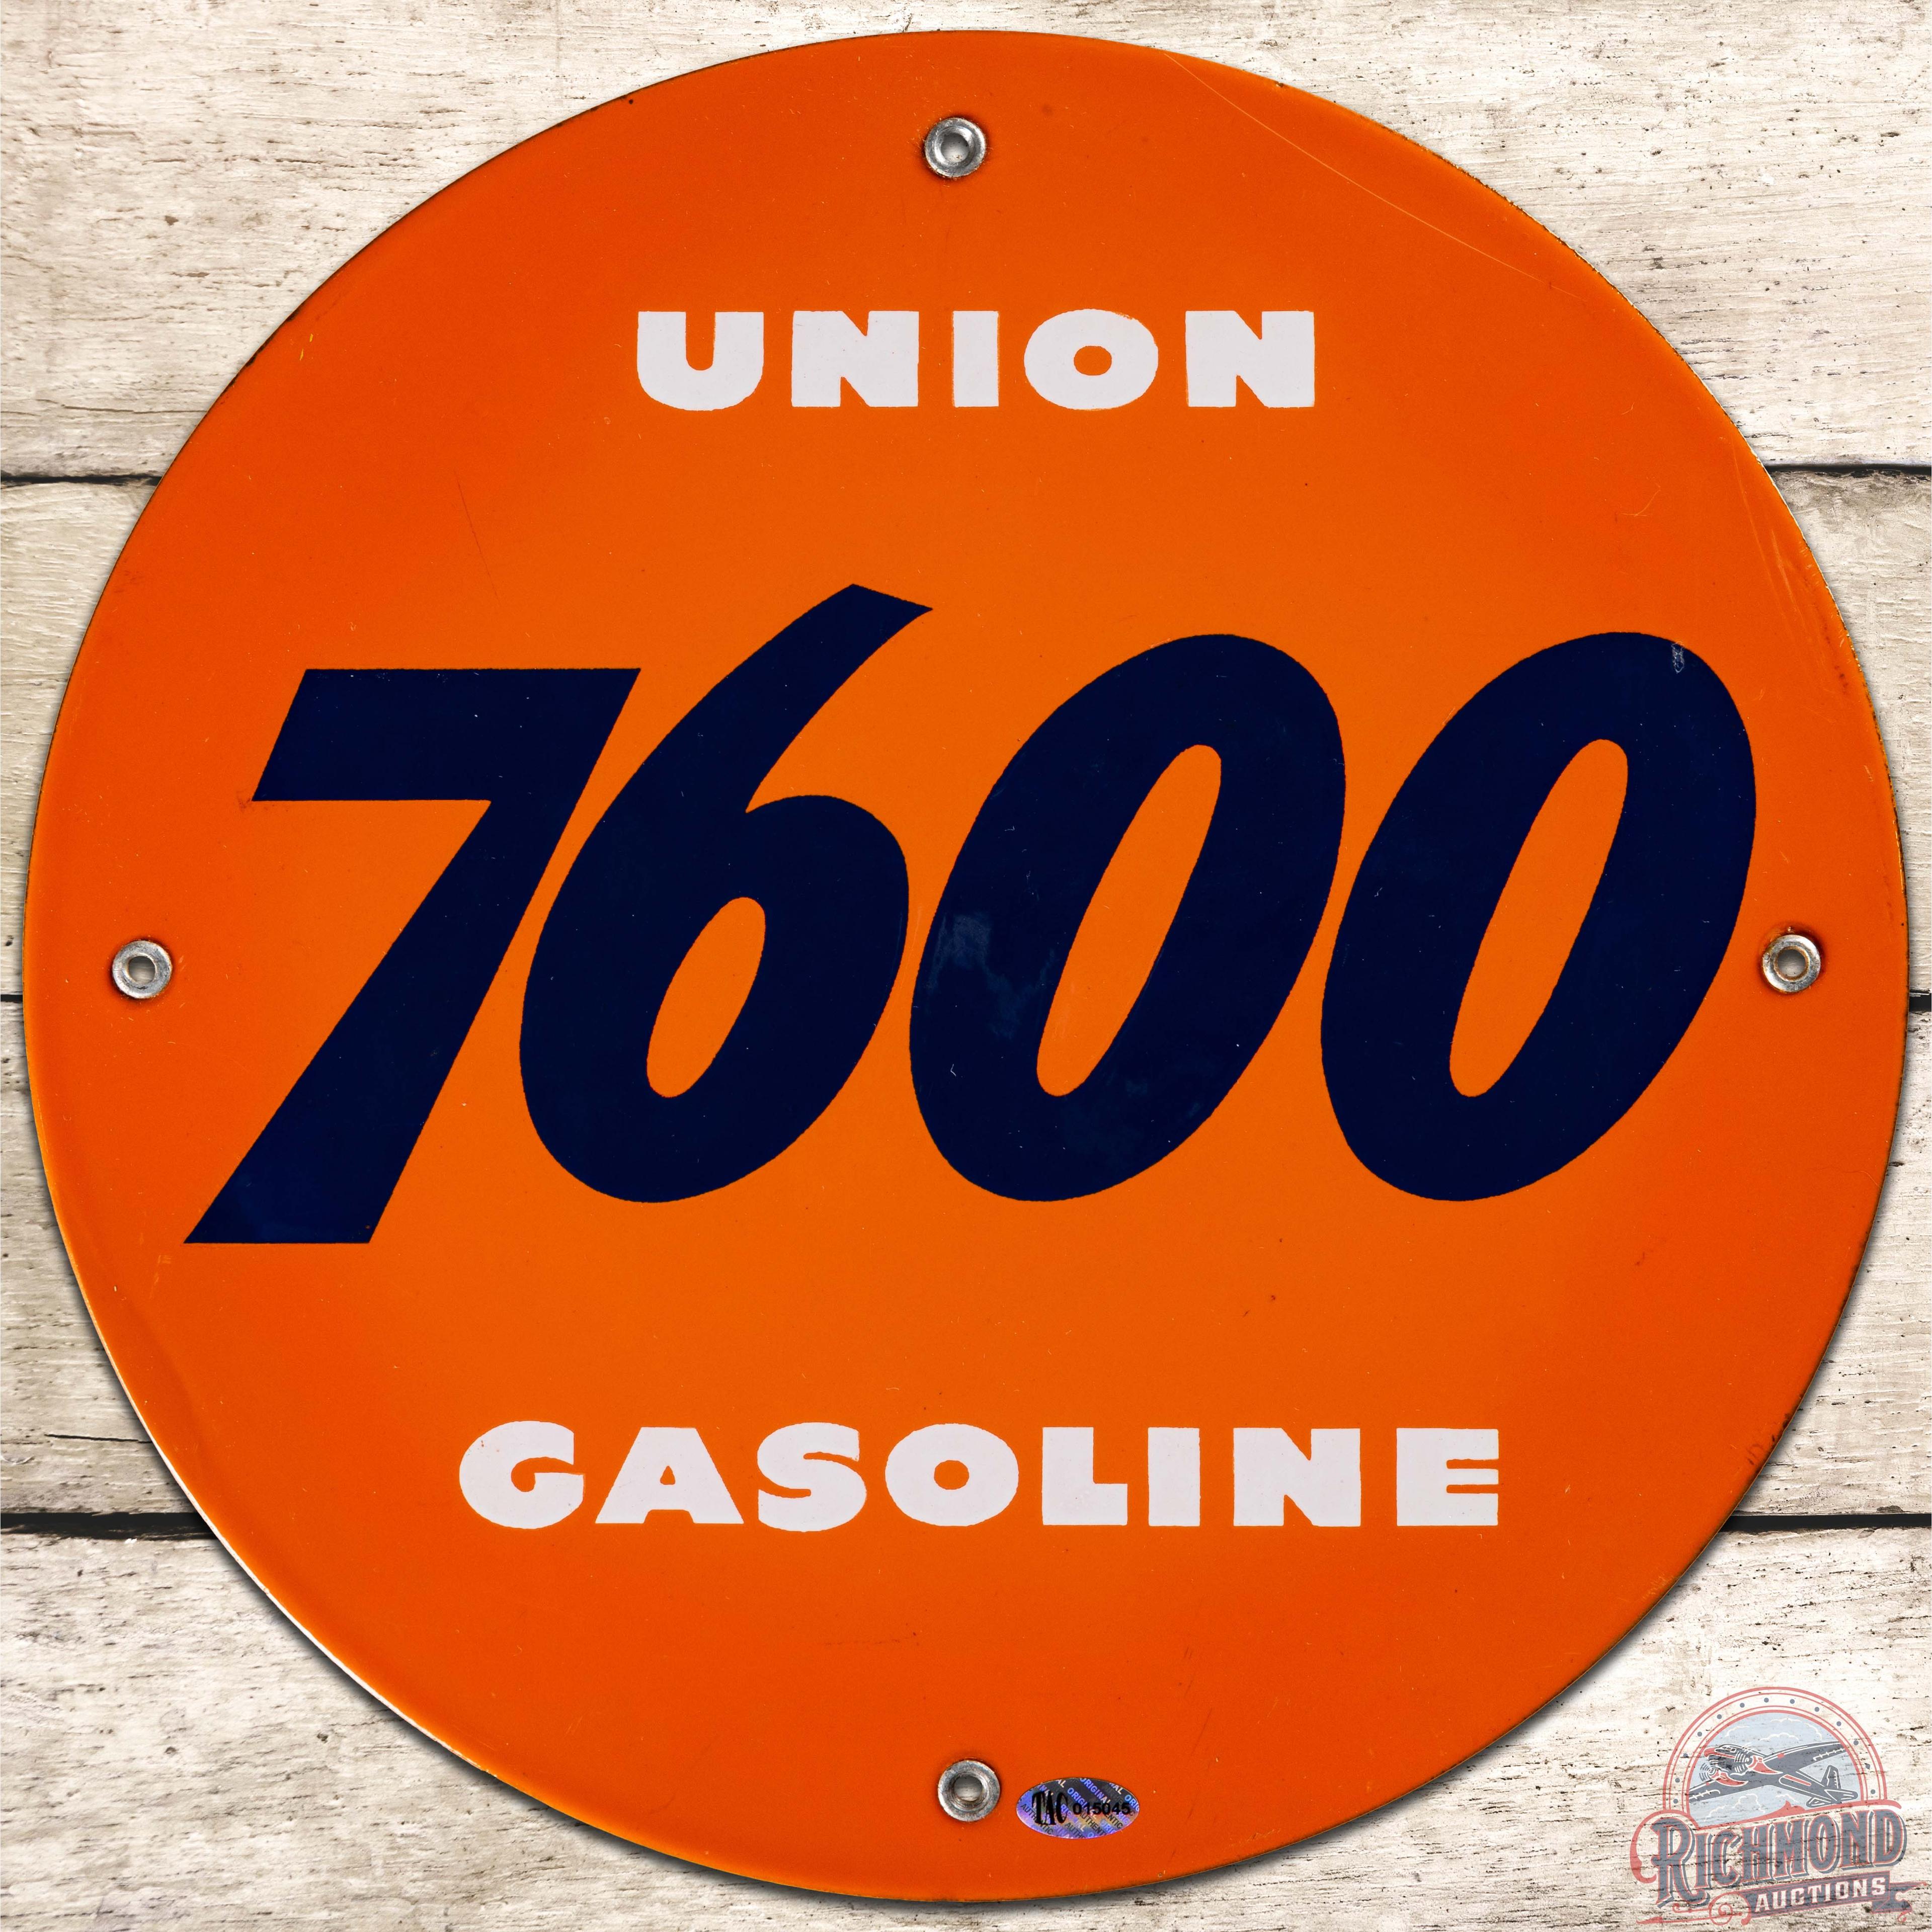 Union 7600 Gasoline SS Porcelain Pump Plate Sign